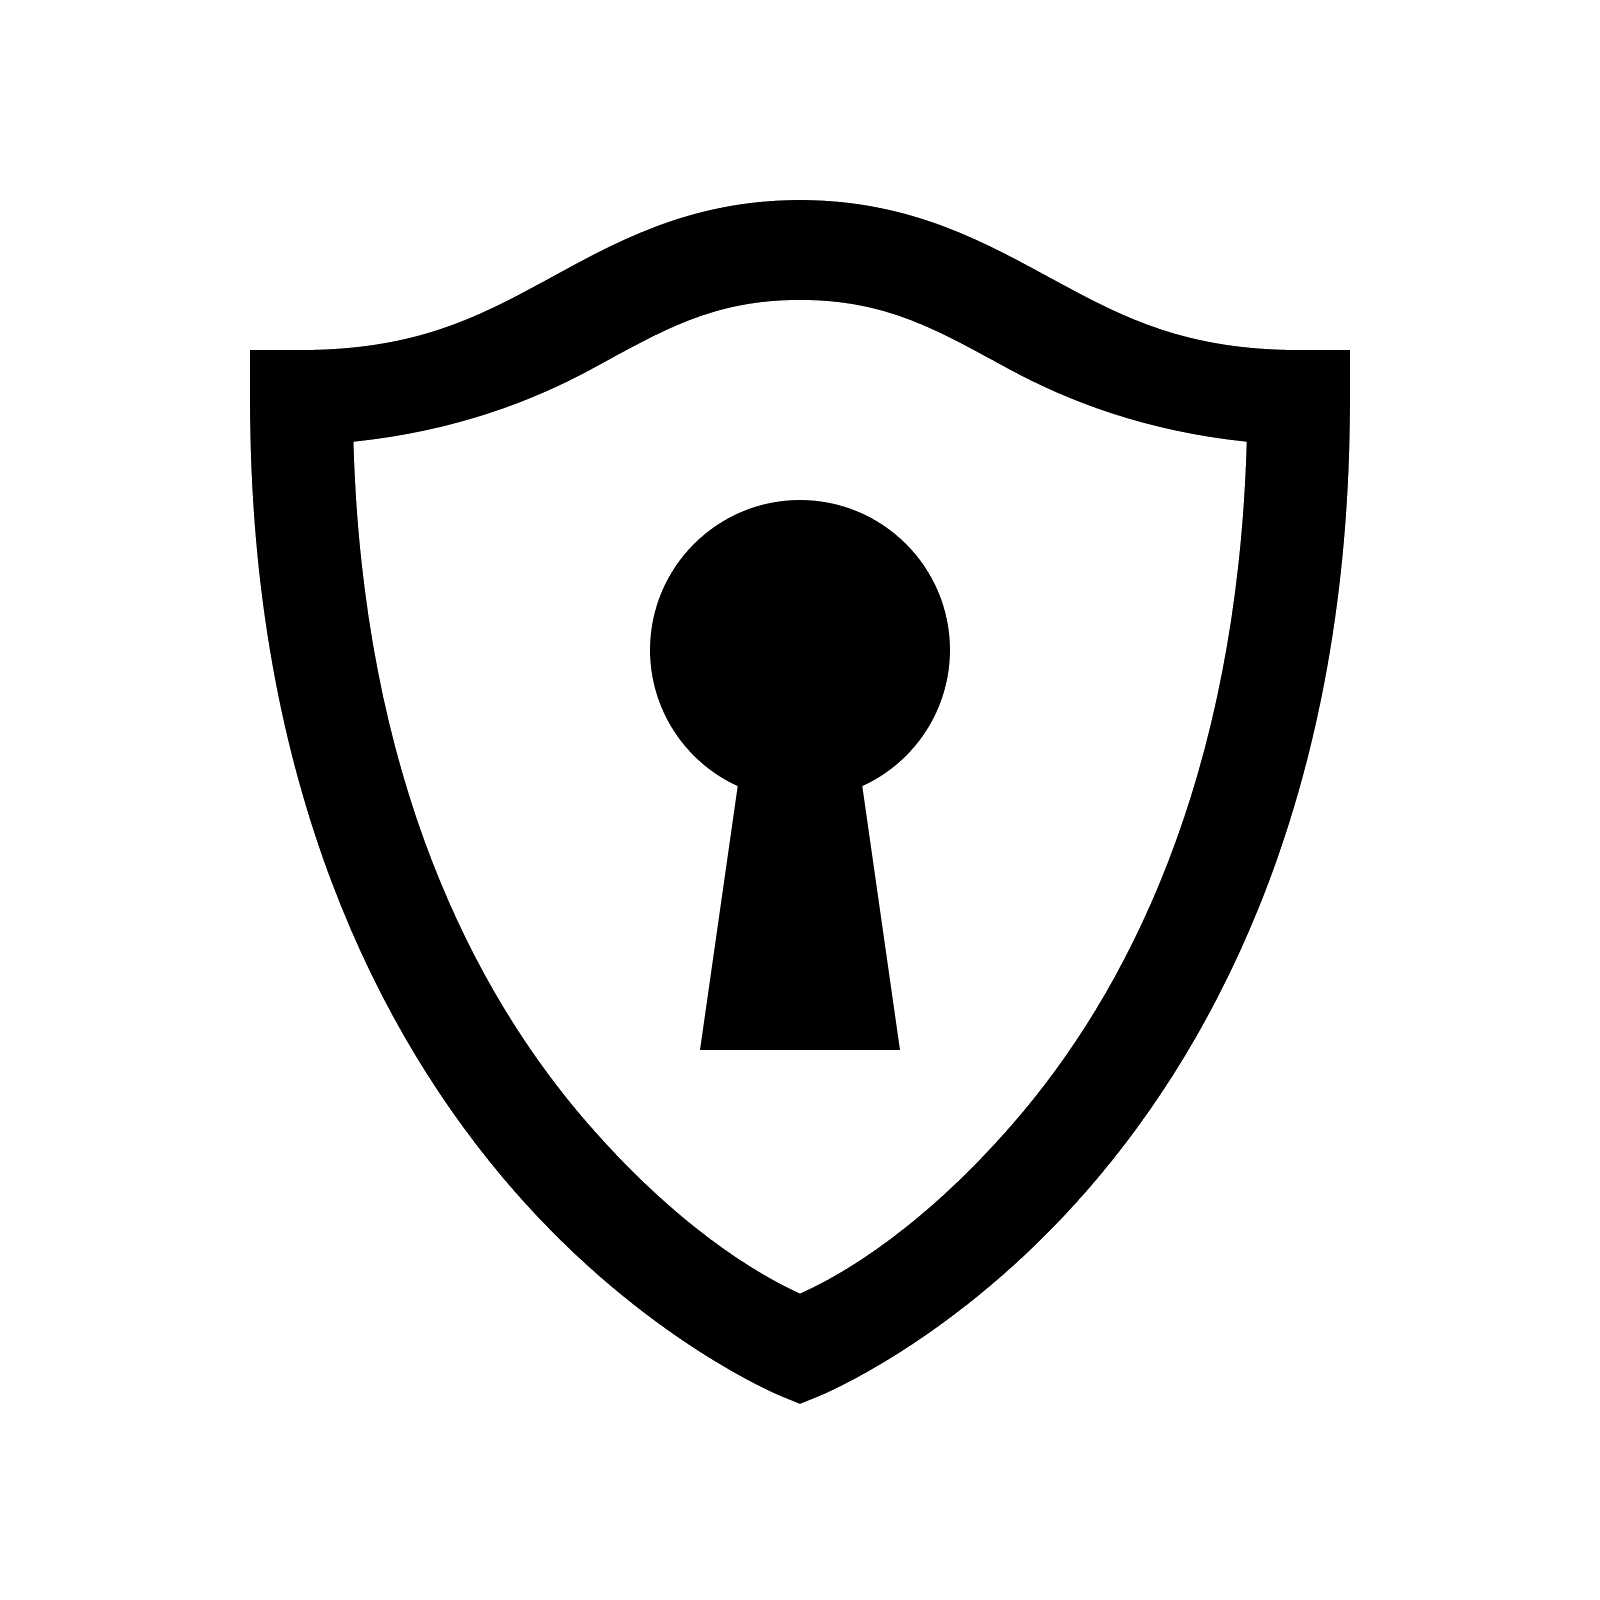 Clipart - Lock icon